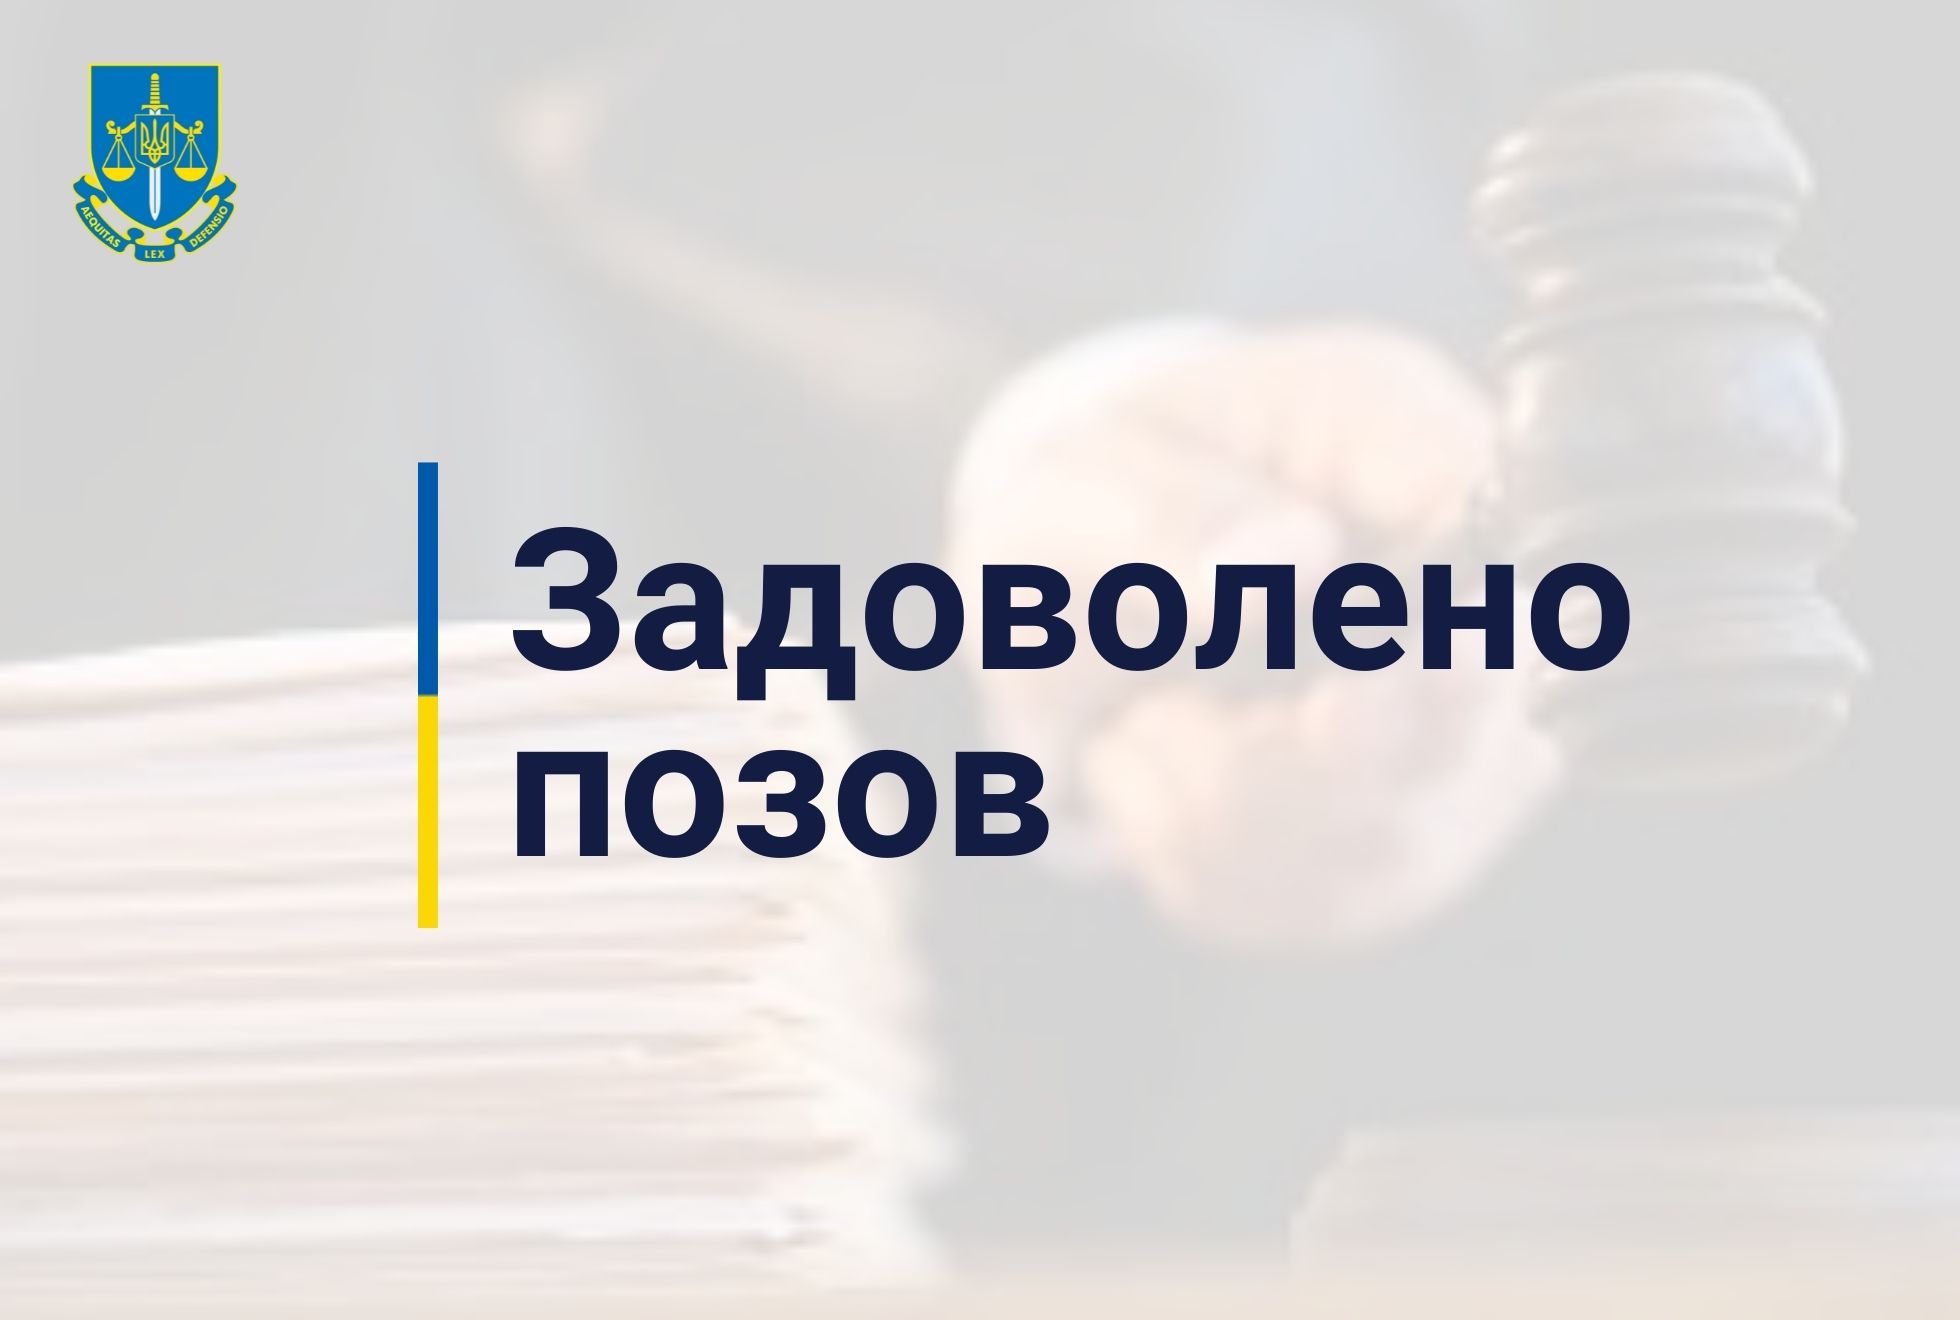 Столична прокуратура через суд зобов’язала товариство сплатити 12,5 млн грн орендної плати землю